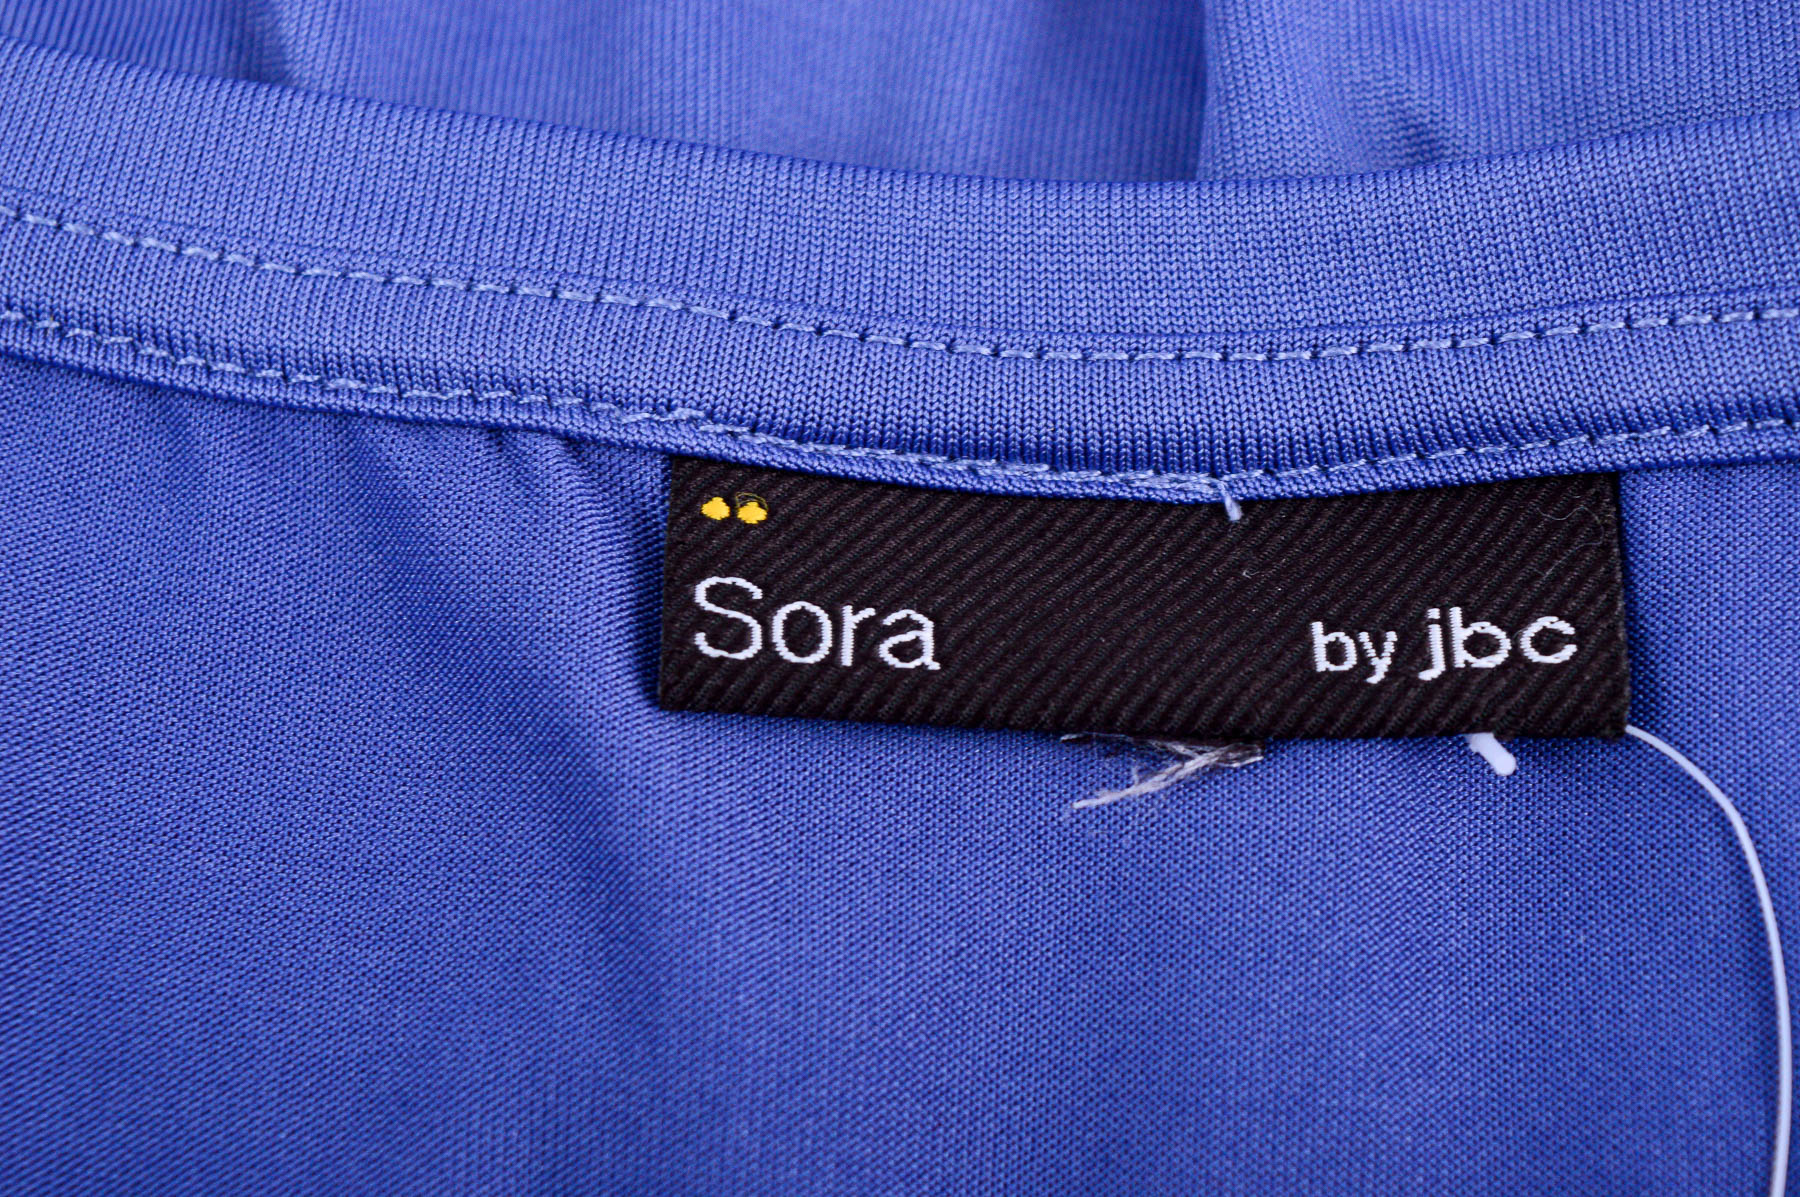 Γυναικεία μπλούζα - Sora by jbc - 2